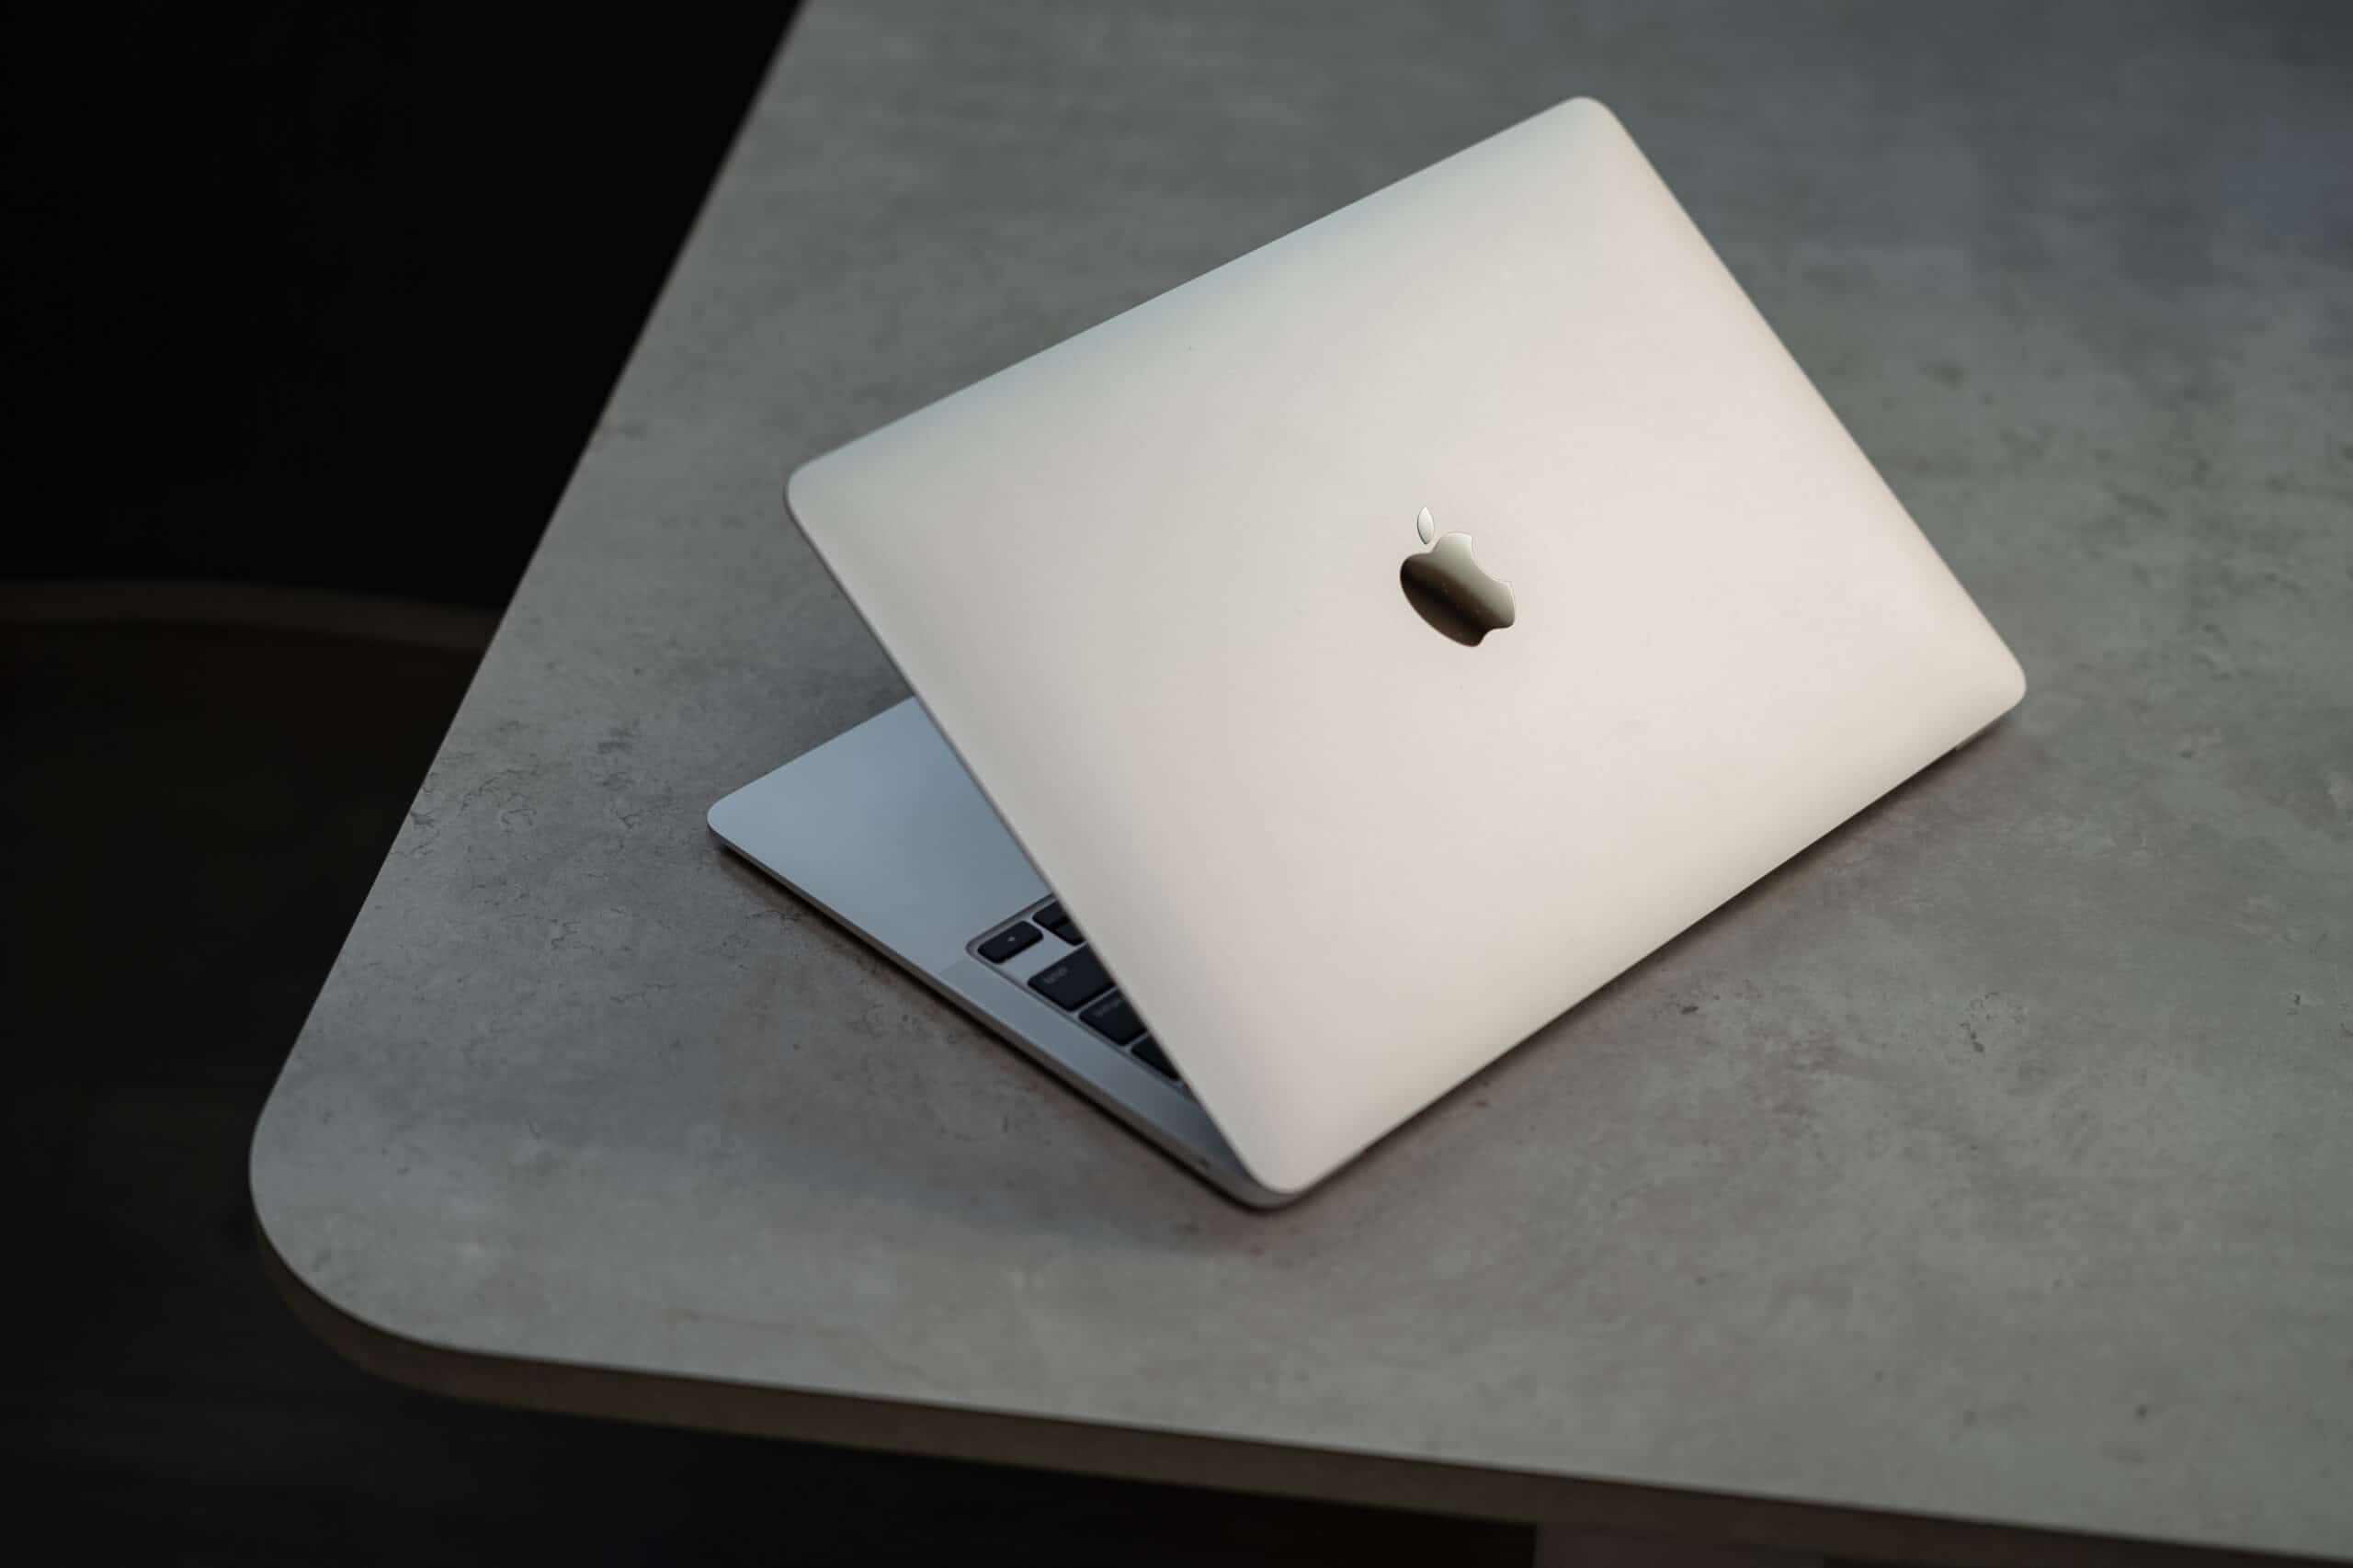 قیمت لپ تاپ اپل 13 اینچ مدل MacBook Air MGN93 2020 و پردازنده M1 با ظرفیت 256 گیگابایت و 8 گیگابایت رم